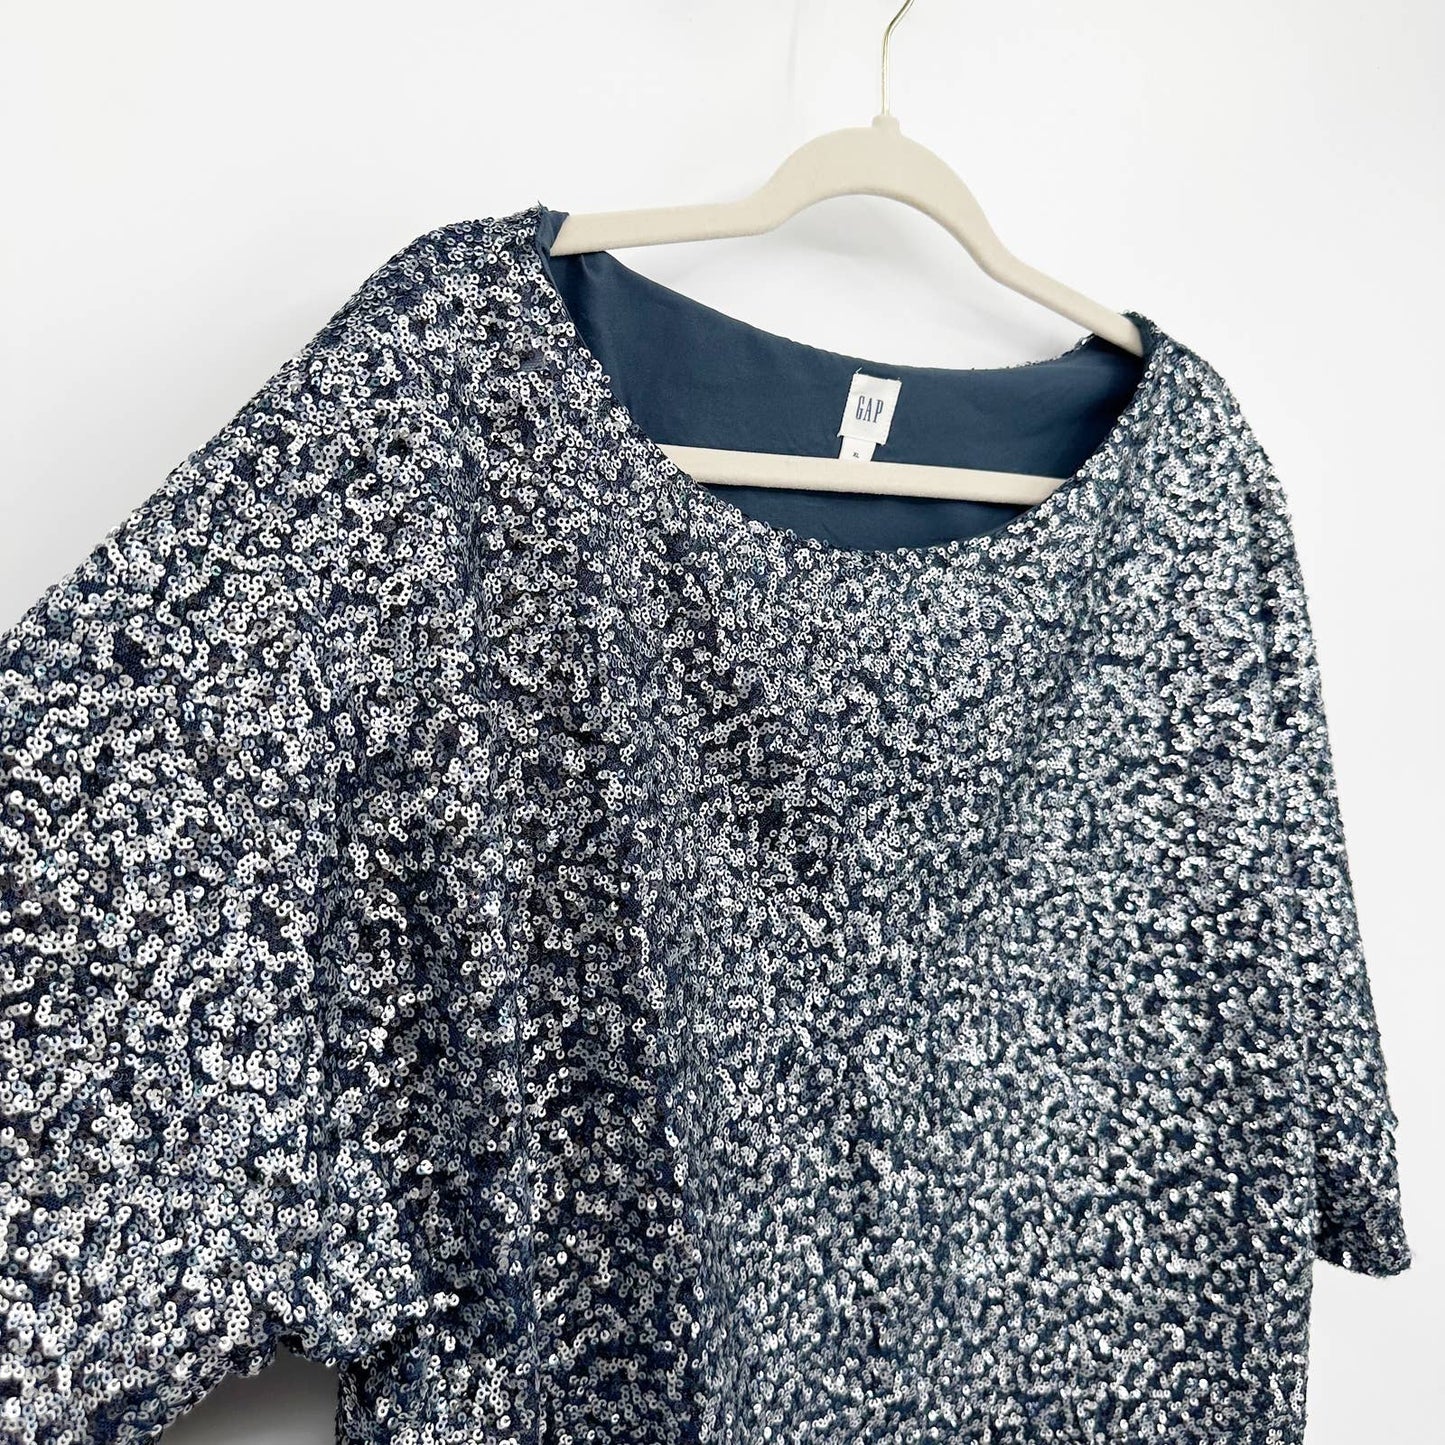 GAP Short Sleeve Kimono Sequin Top Blouse Blue Silver XL